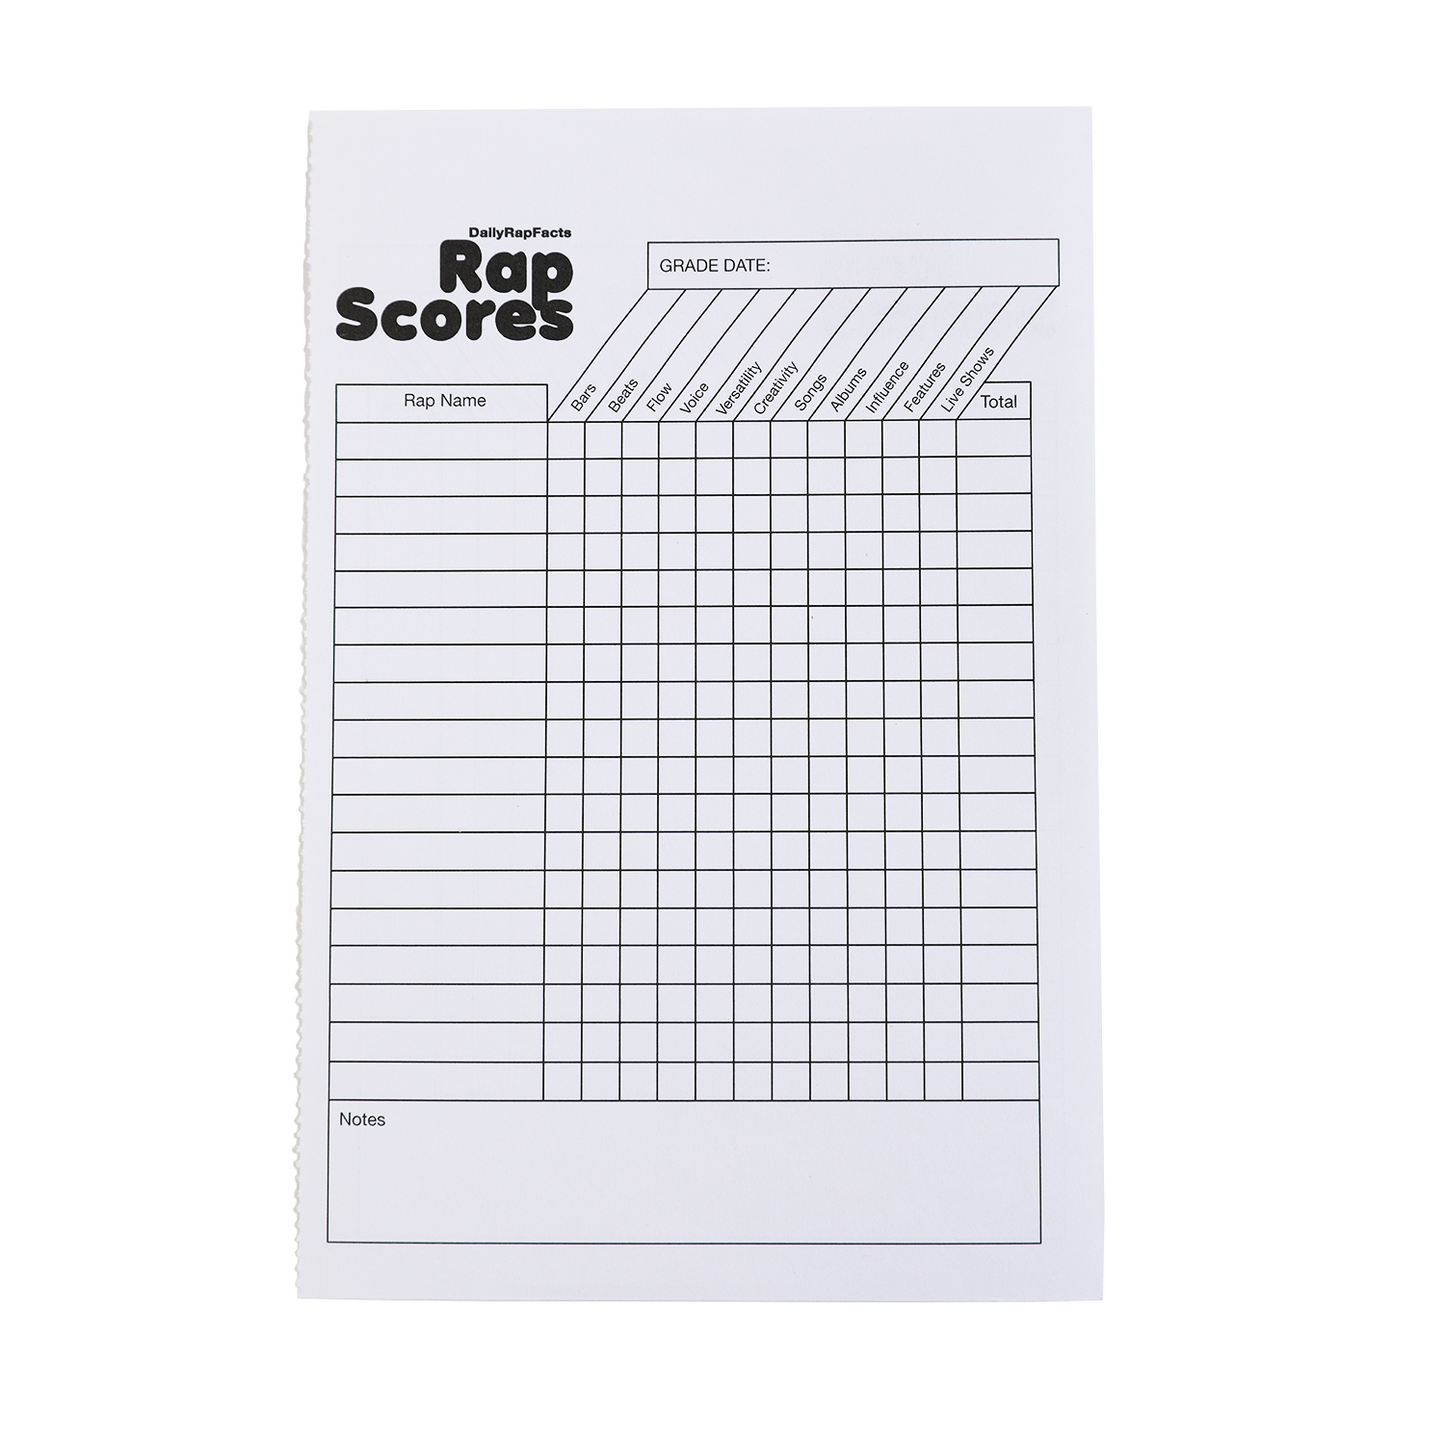 Rap Scores: A Rap/Hip-Hop Gradebook